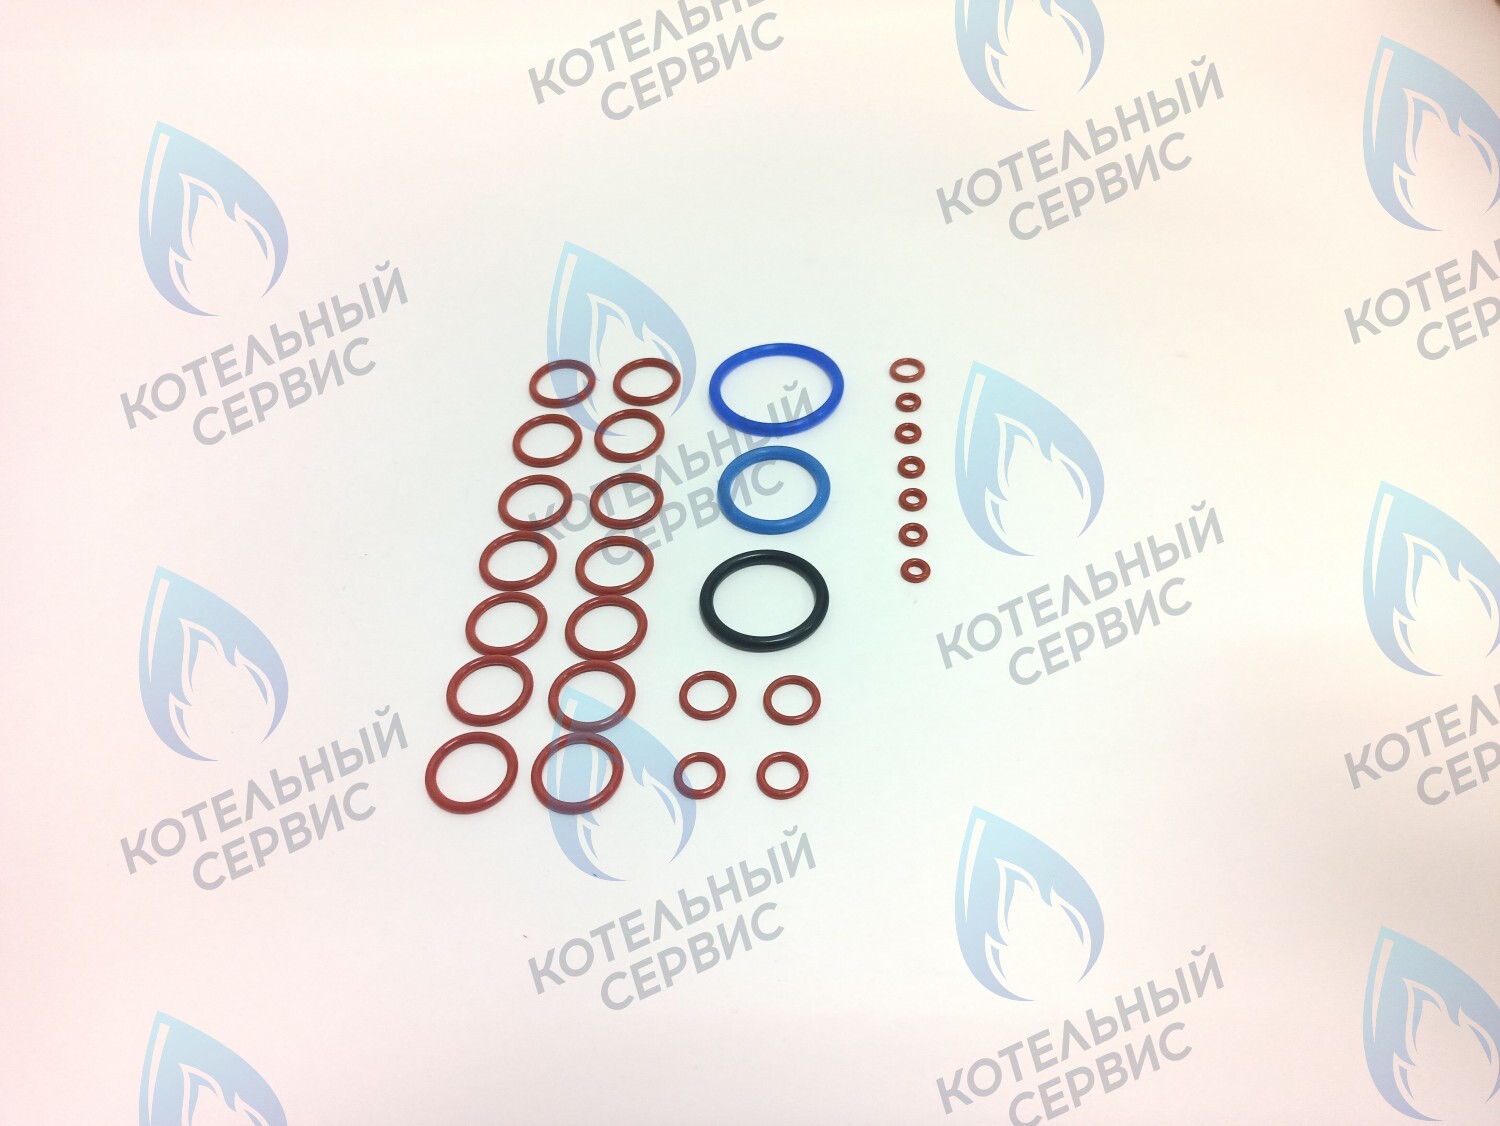 ZP401 Комплект уплотнительных колец O-ring для котла Daewoo/Hydrosta 100-300 в Казани